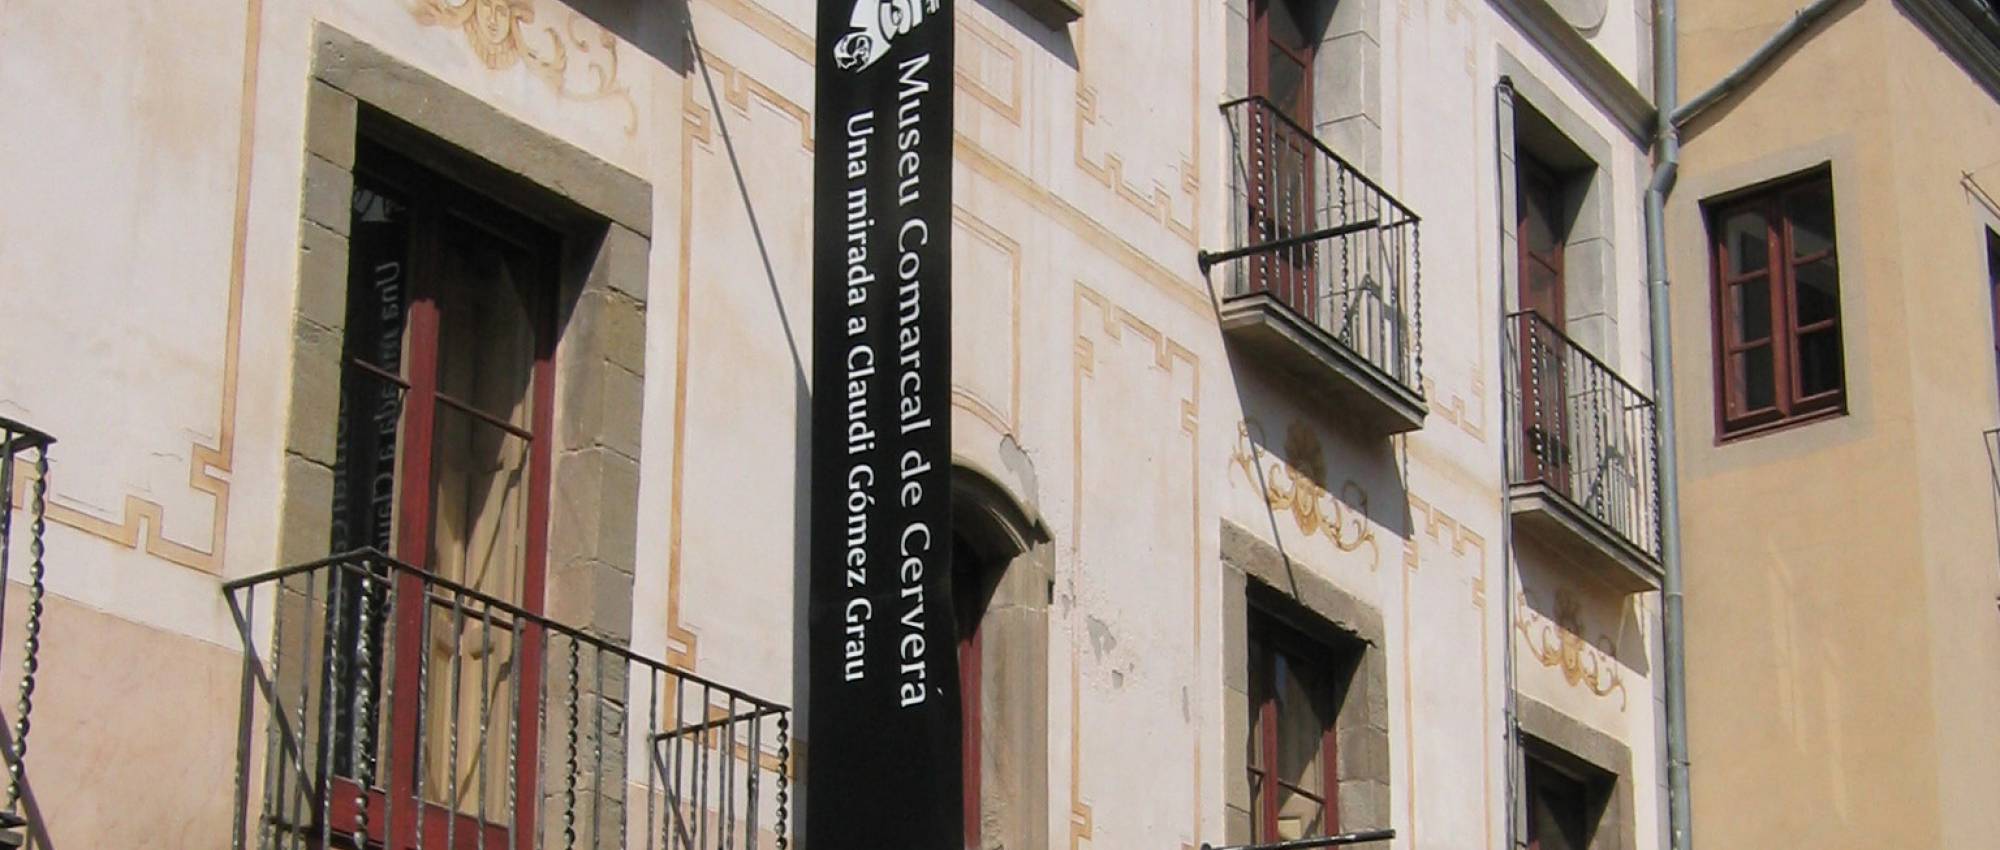 Fachada de la Casa Museu Duran i Sanpere de Cervera. CC BY-SA 3.0  - Kippelboy / Wikimedia Commons